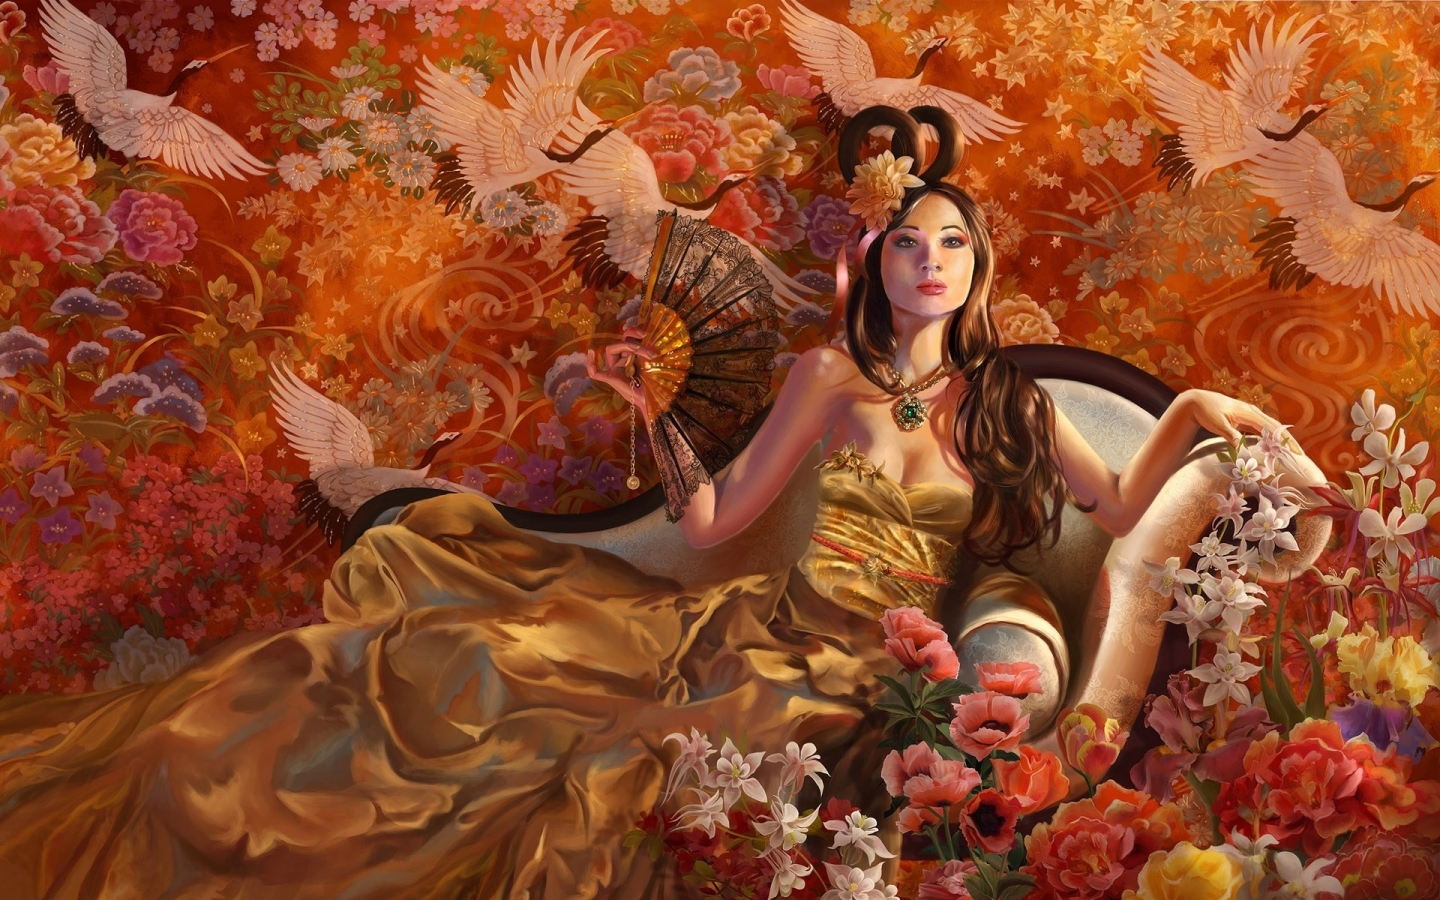 Fantasy Girl Autumn for 1440 x 900 widescreen resolution